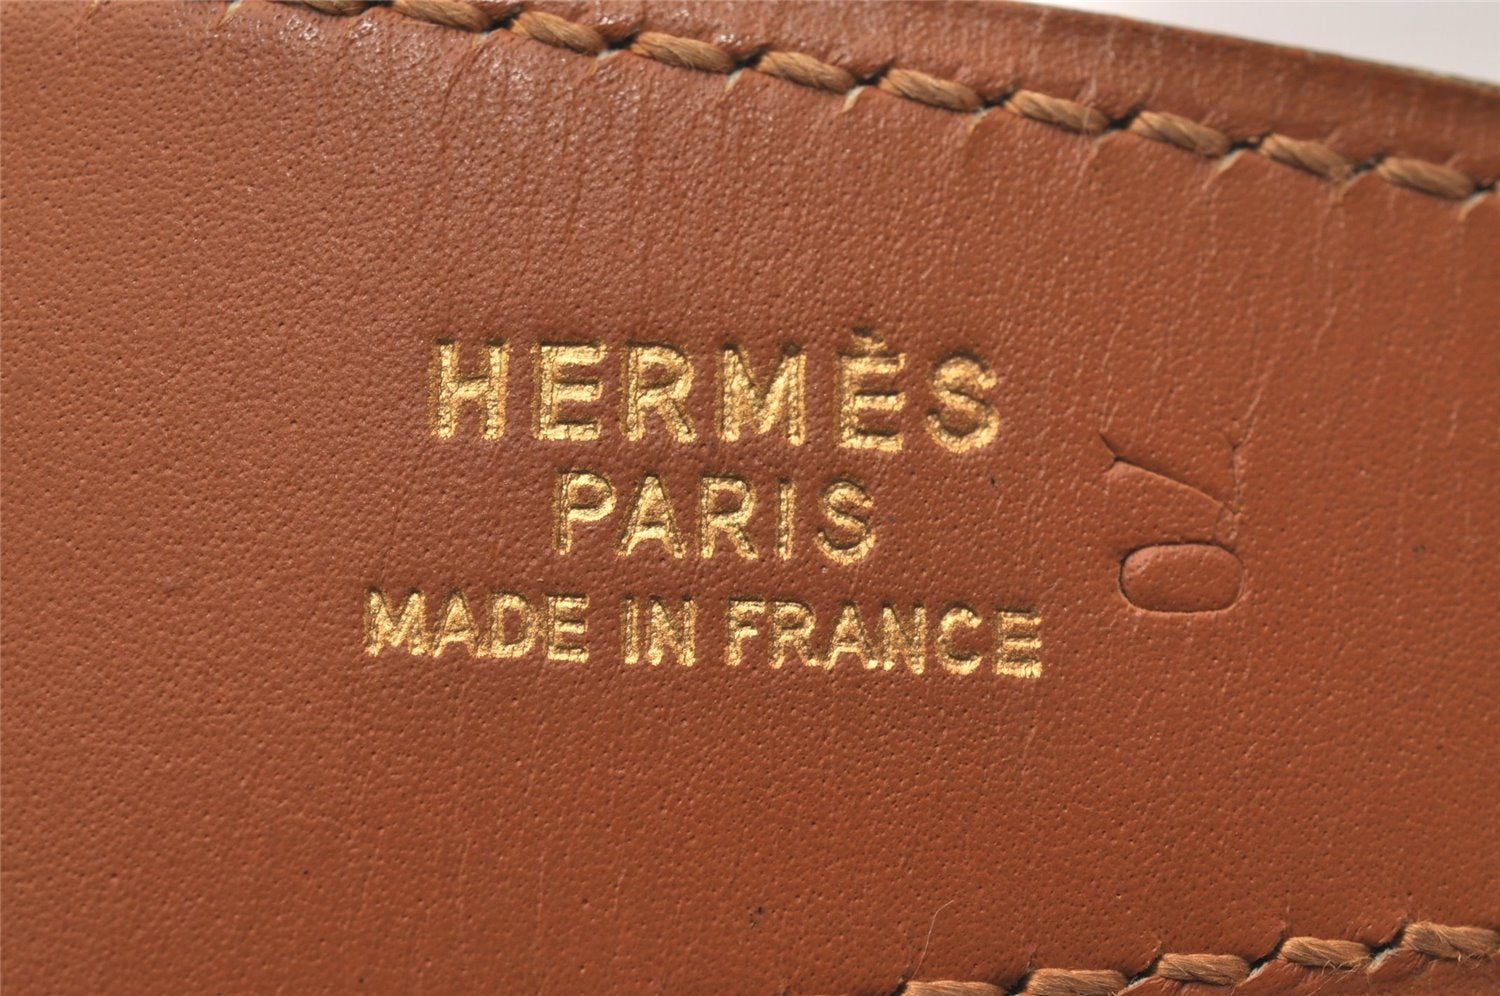 Authentic HERMES Constance Leather Belt Size 70cm 27.6